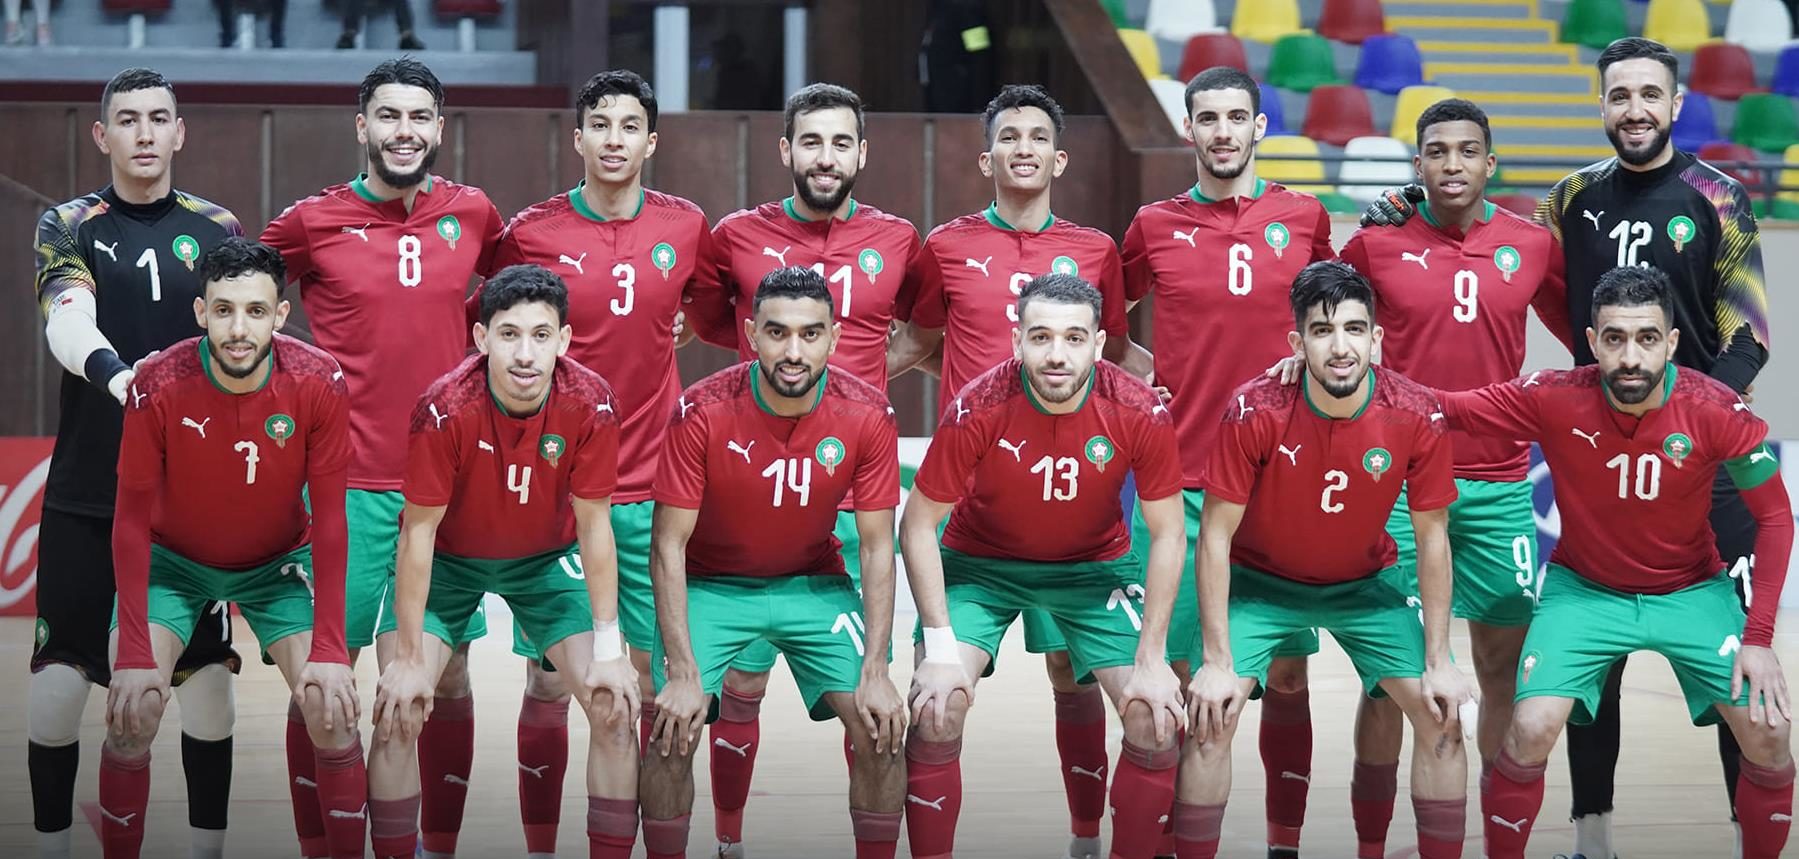 المنتخب المغربي يسحق نظيره الإستوني بـ 11 هدفا في مباراة كرة القدم داخل القاعة